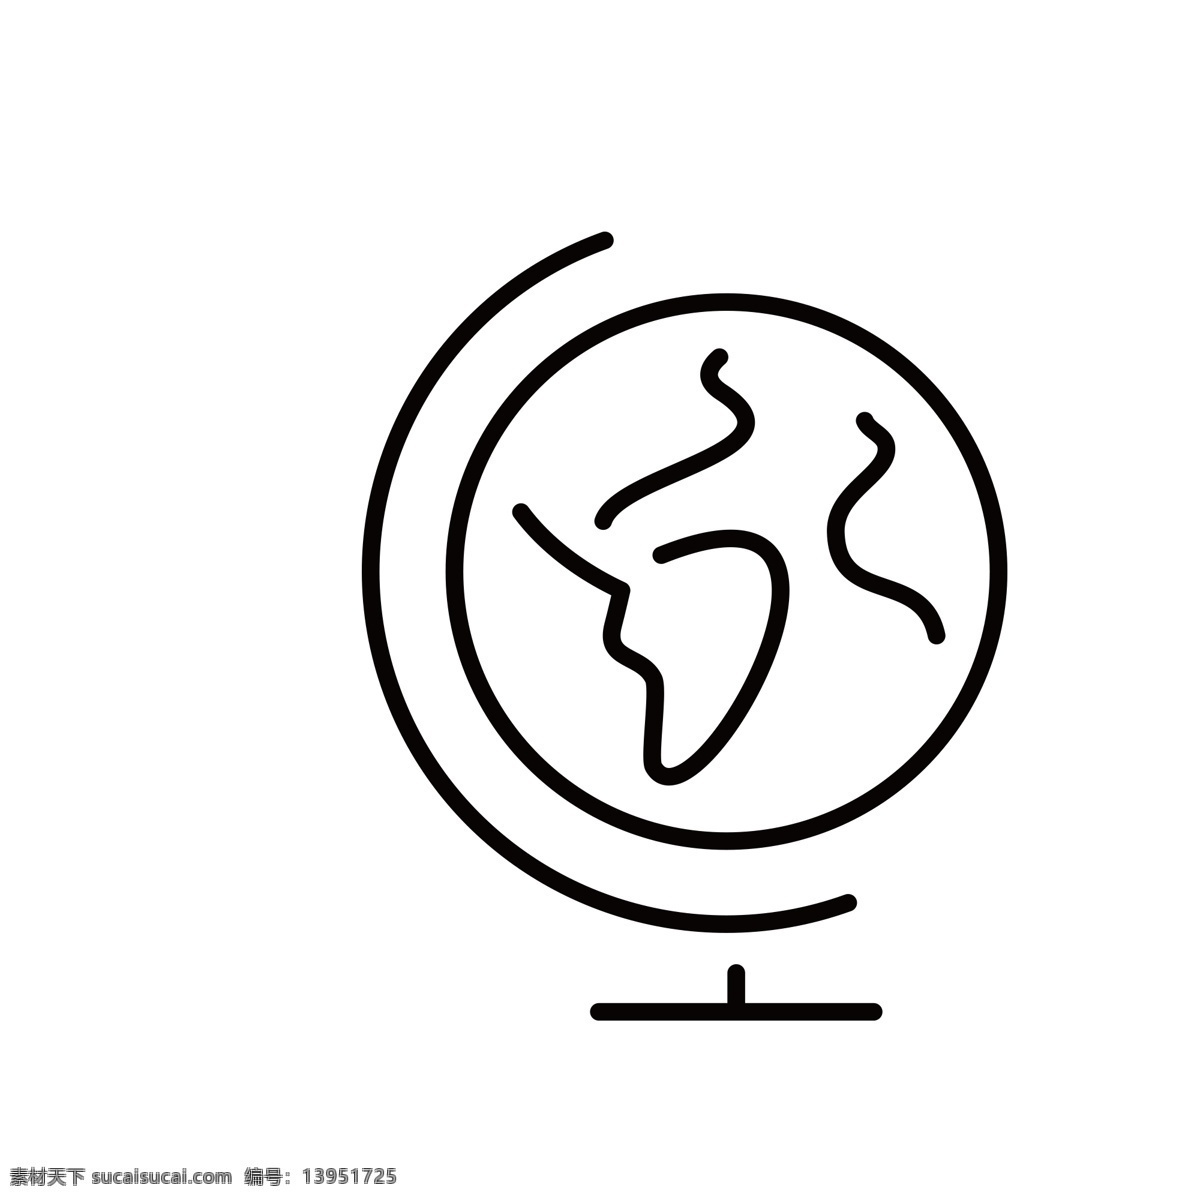 扁平化地球仪 地球仪 扁平化ui ui图标 手机图标 界面ui 网页ui h5图标